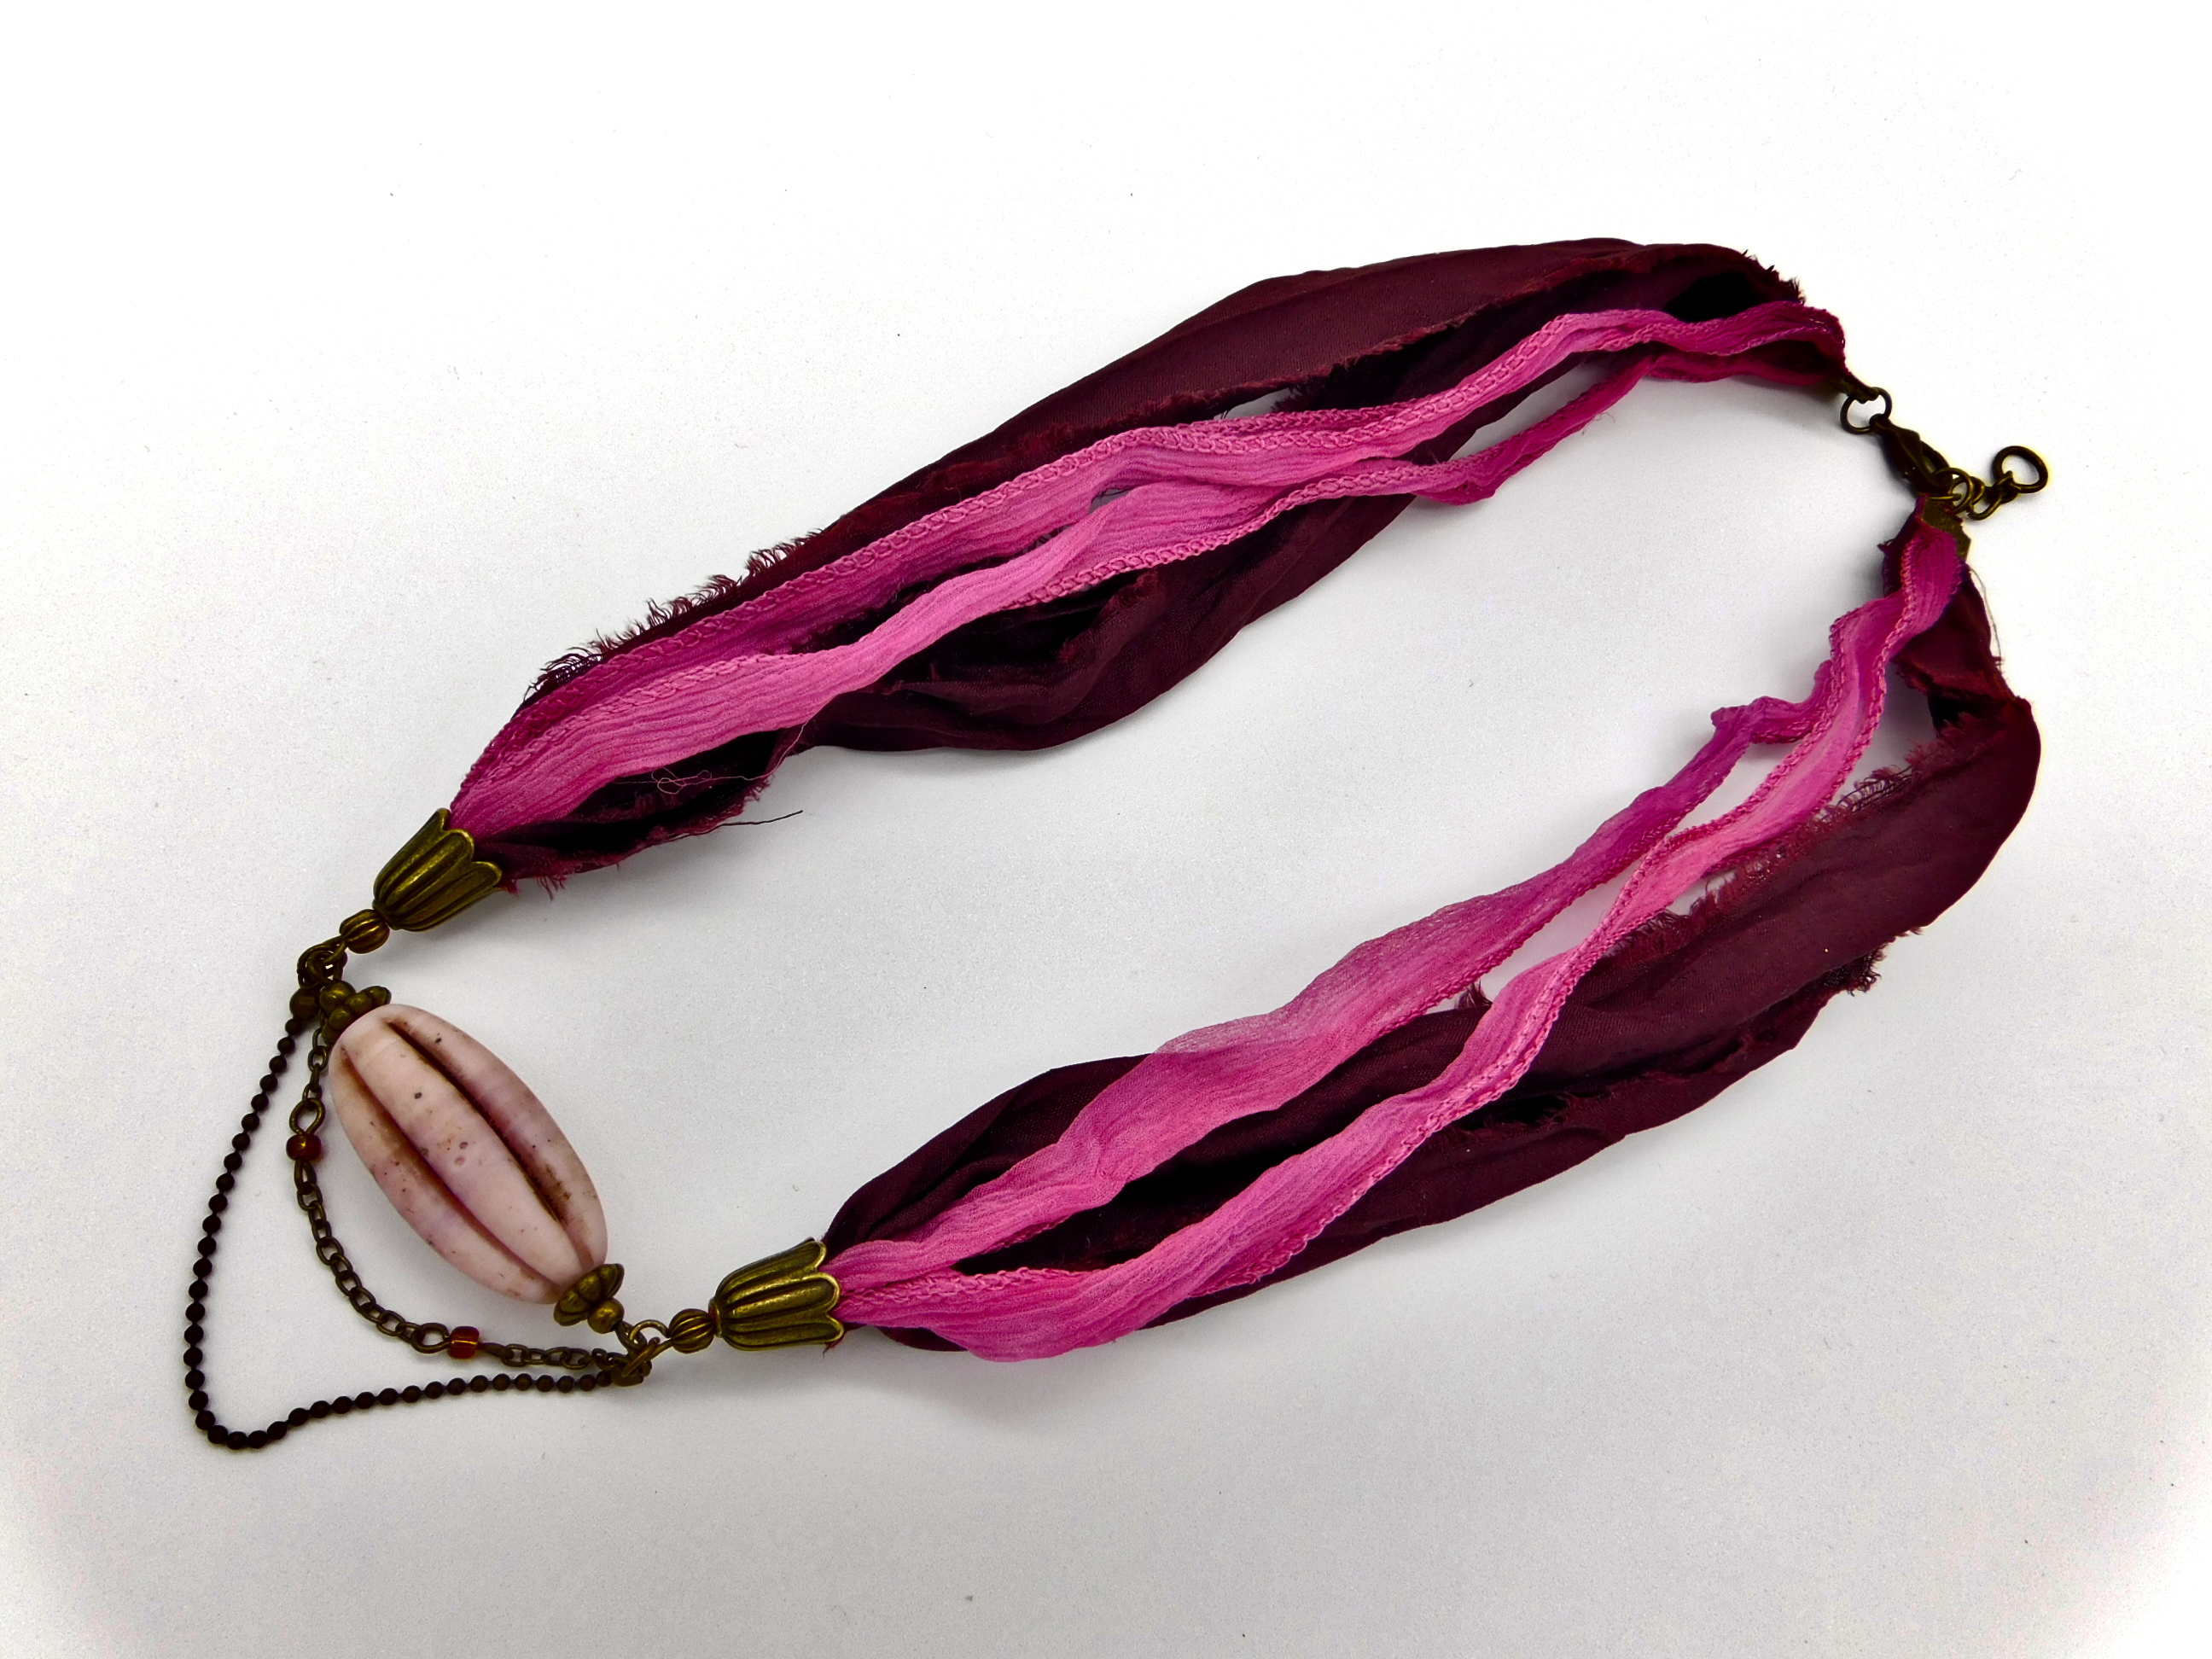 Halskette mit Sari Seidenband - dunkelrot, rosé